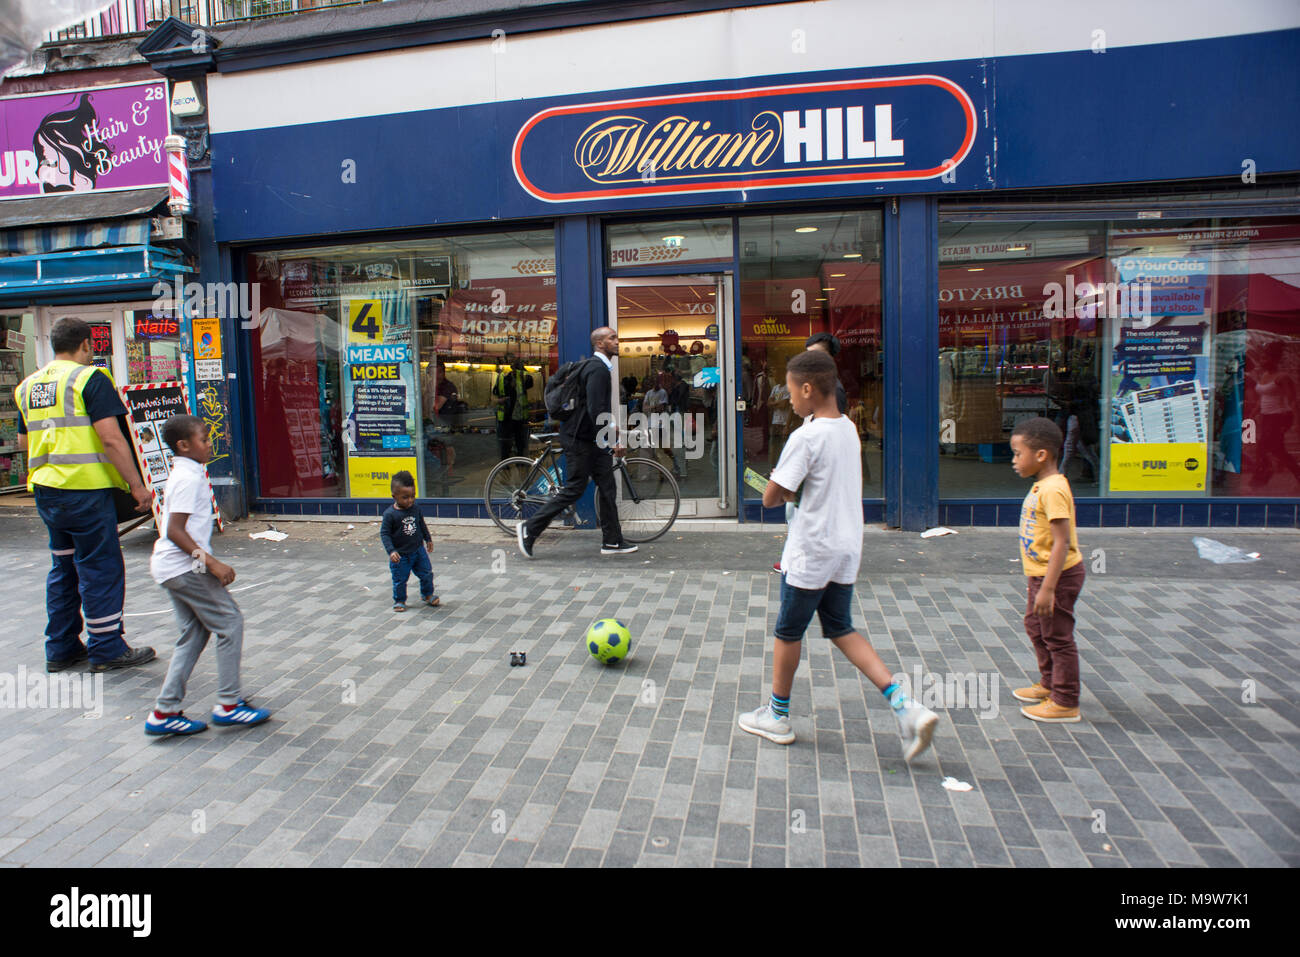 Londra. I bambini giocano a calcio nella parte anteriore del William Hill bet shop, Brixton. Regno Unito. Foto Stock